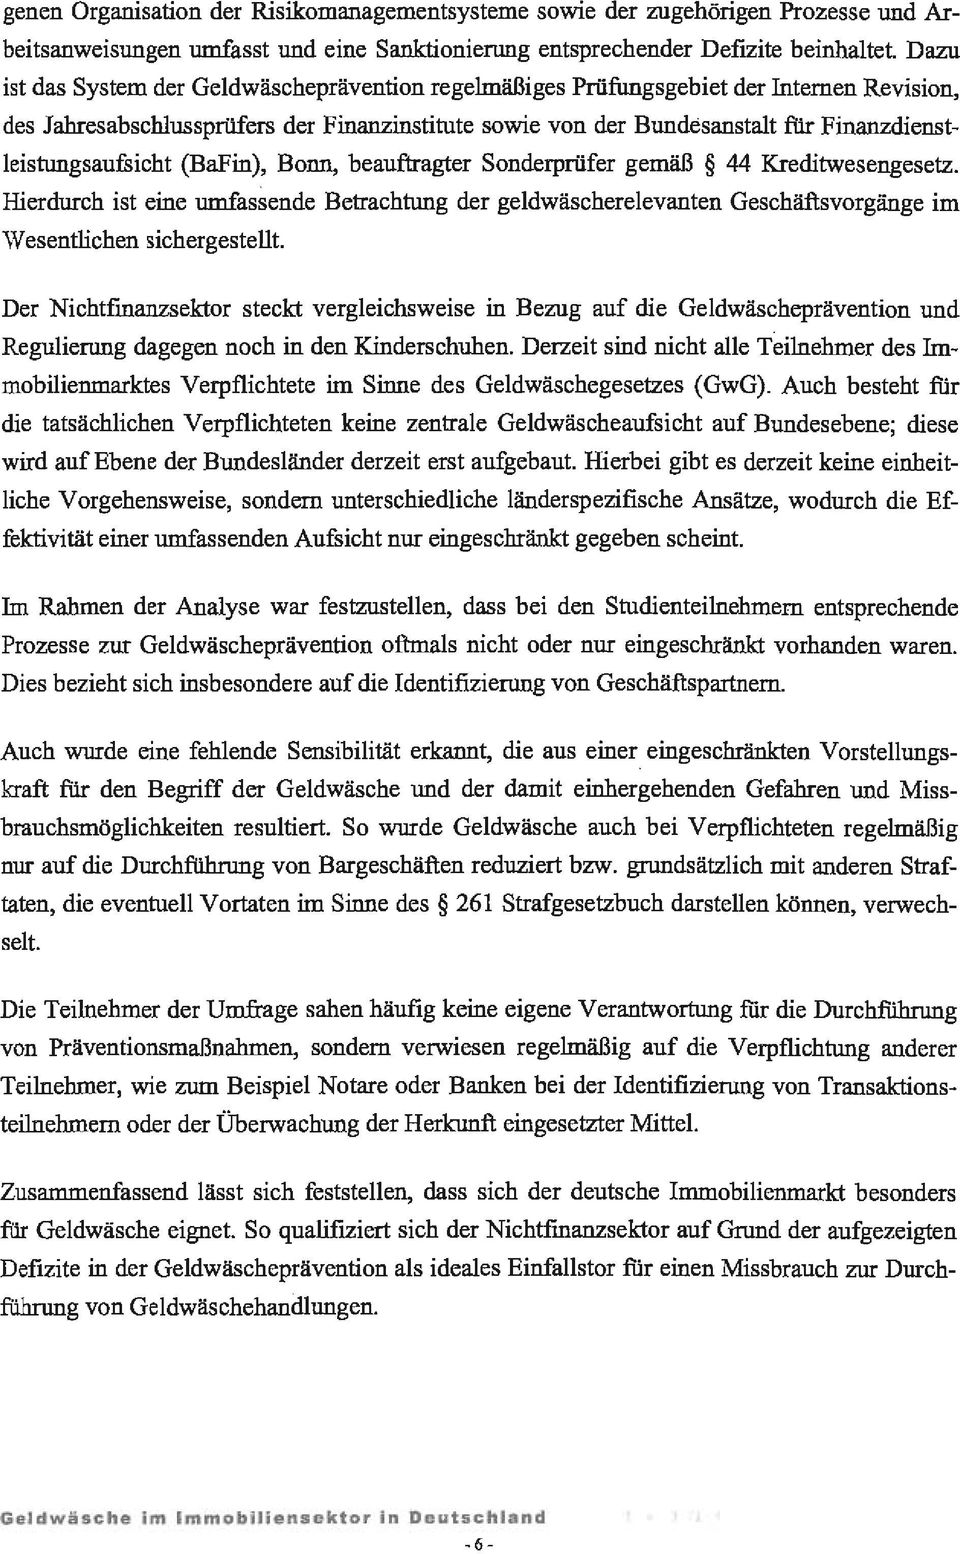 Finanzdienstleistungsaufsicht (BaFin), Bonn, beauftragter SonderpIÜfer gemäß 44 Kreditwesengesetz.